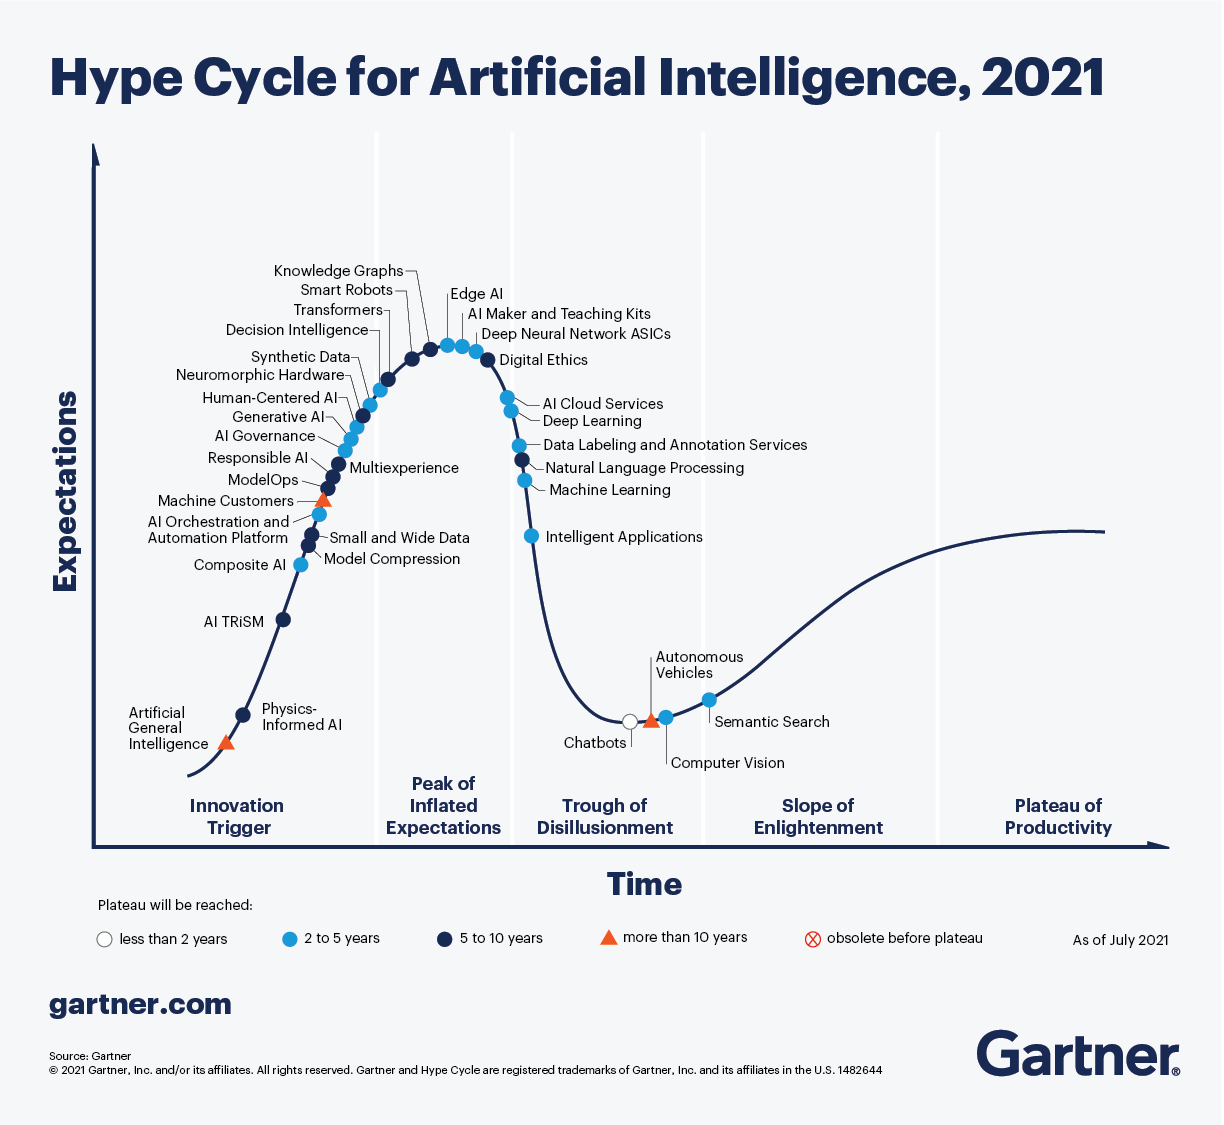 Der Hype Cycle von Gartner für Künstliche Intelligenz im Jahr 2021 beschreibt KI-spezifische Innovationen, die sich in verschiedenen Phasen der Ausgereiftheit, der Akzeptanz und des Hypes befinden.